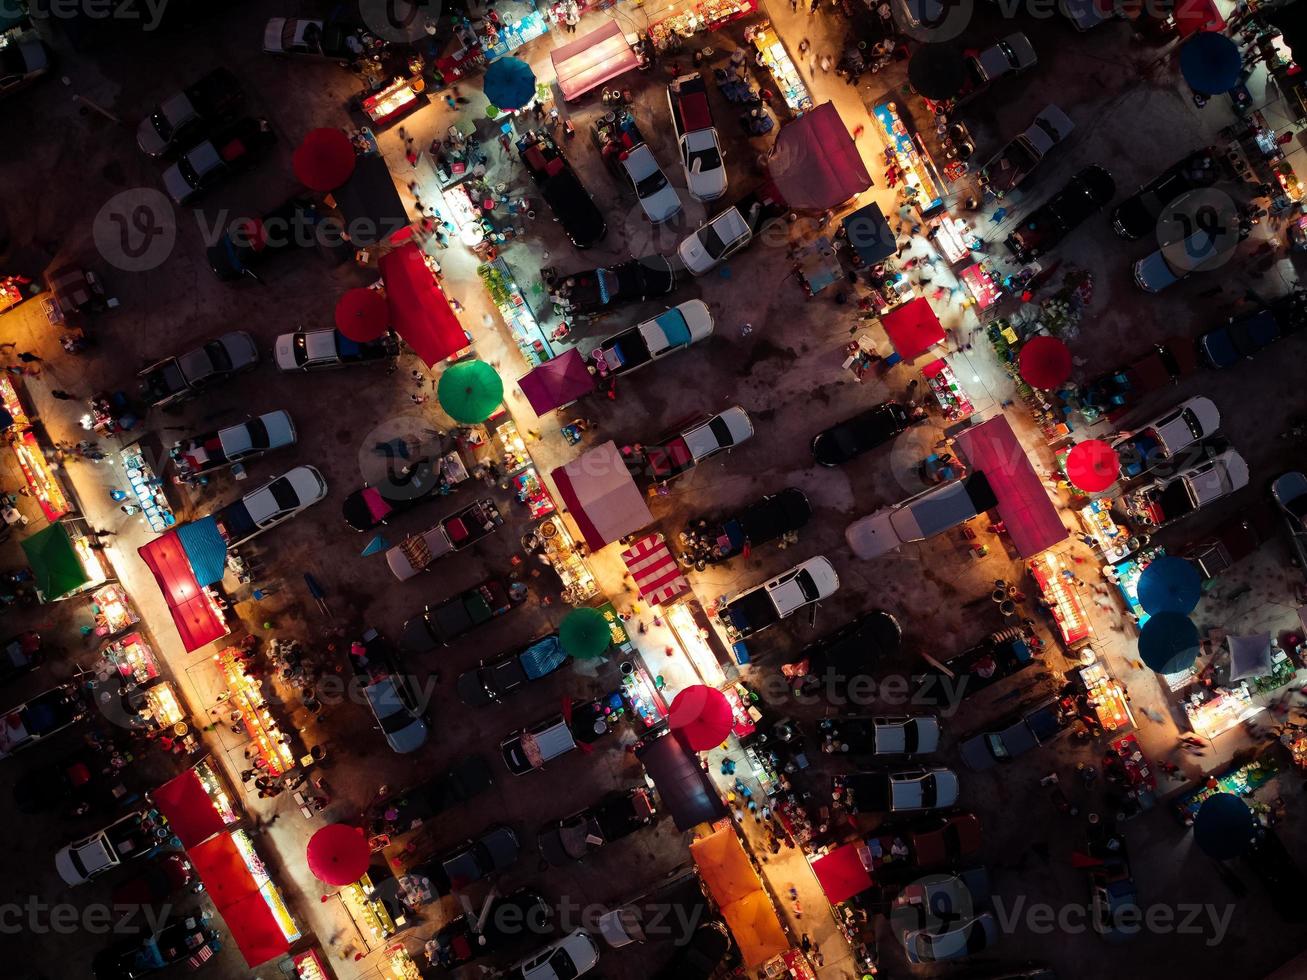 vue aérienne au marché nocturne. il y a beaucoup de monde, de voitures et de magasins. photo